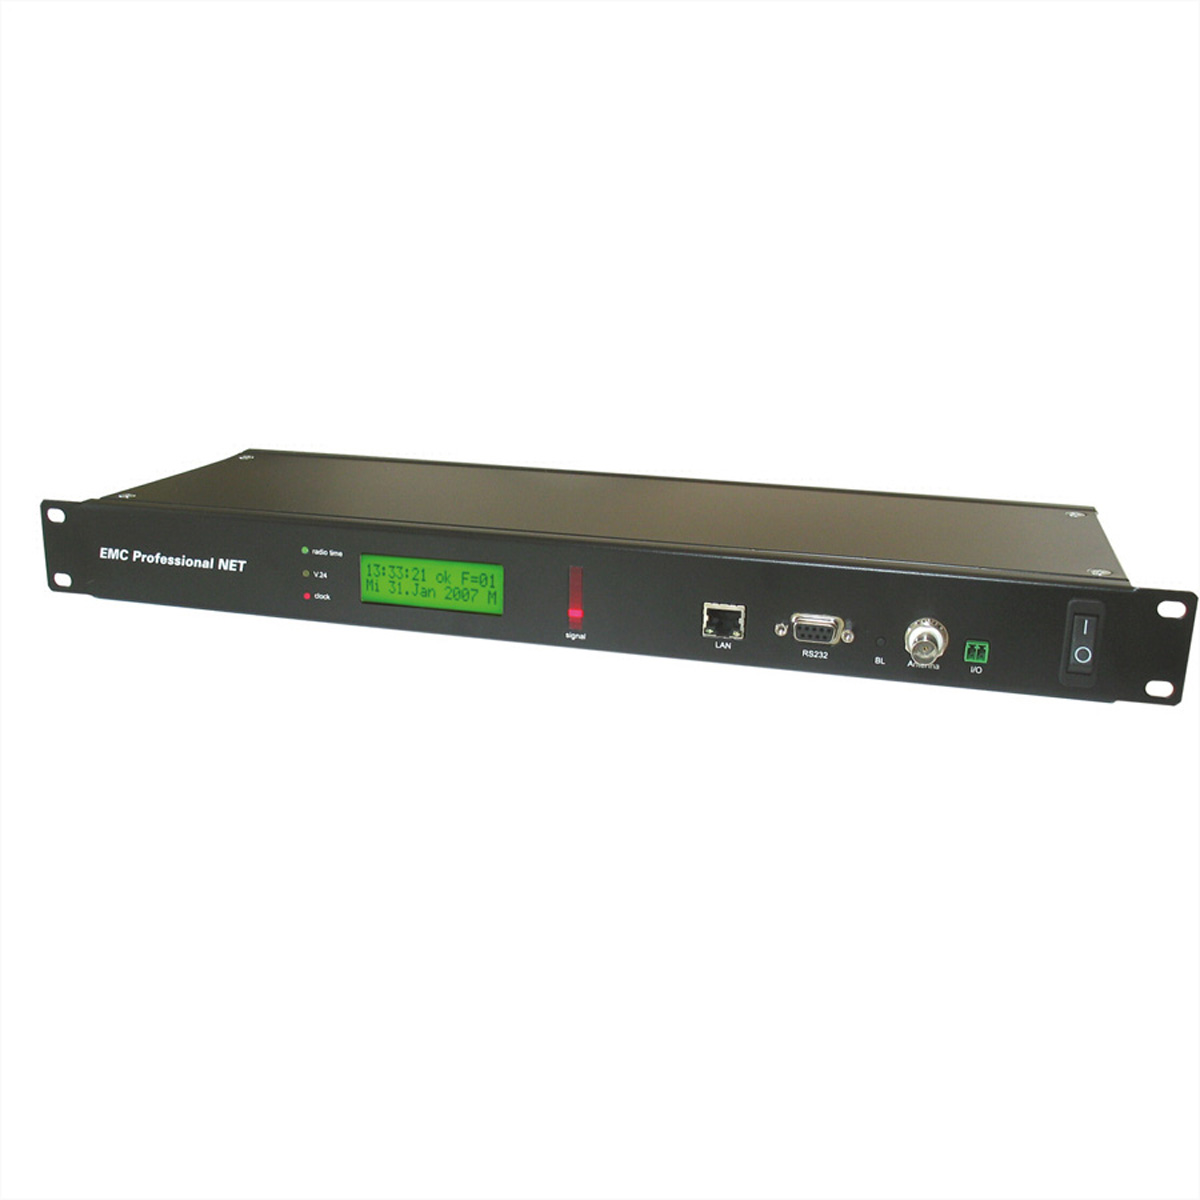 GUDE 3011 EMC Professional Zeitserver mit integrierter Funkuhr für Industrieumge